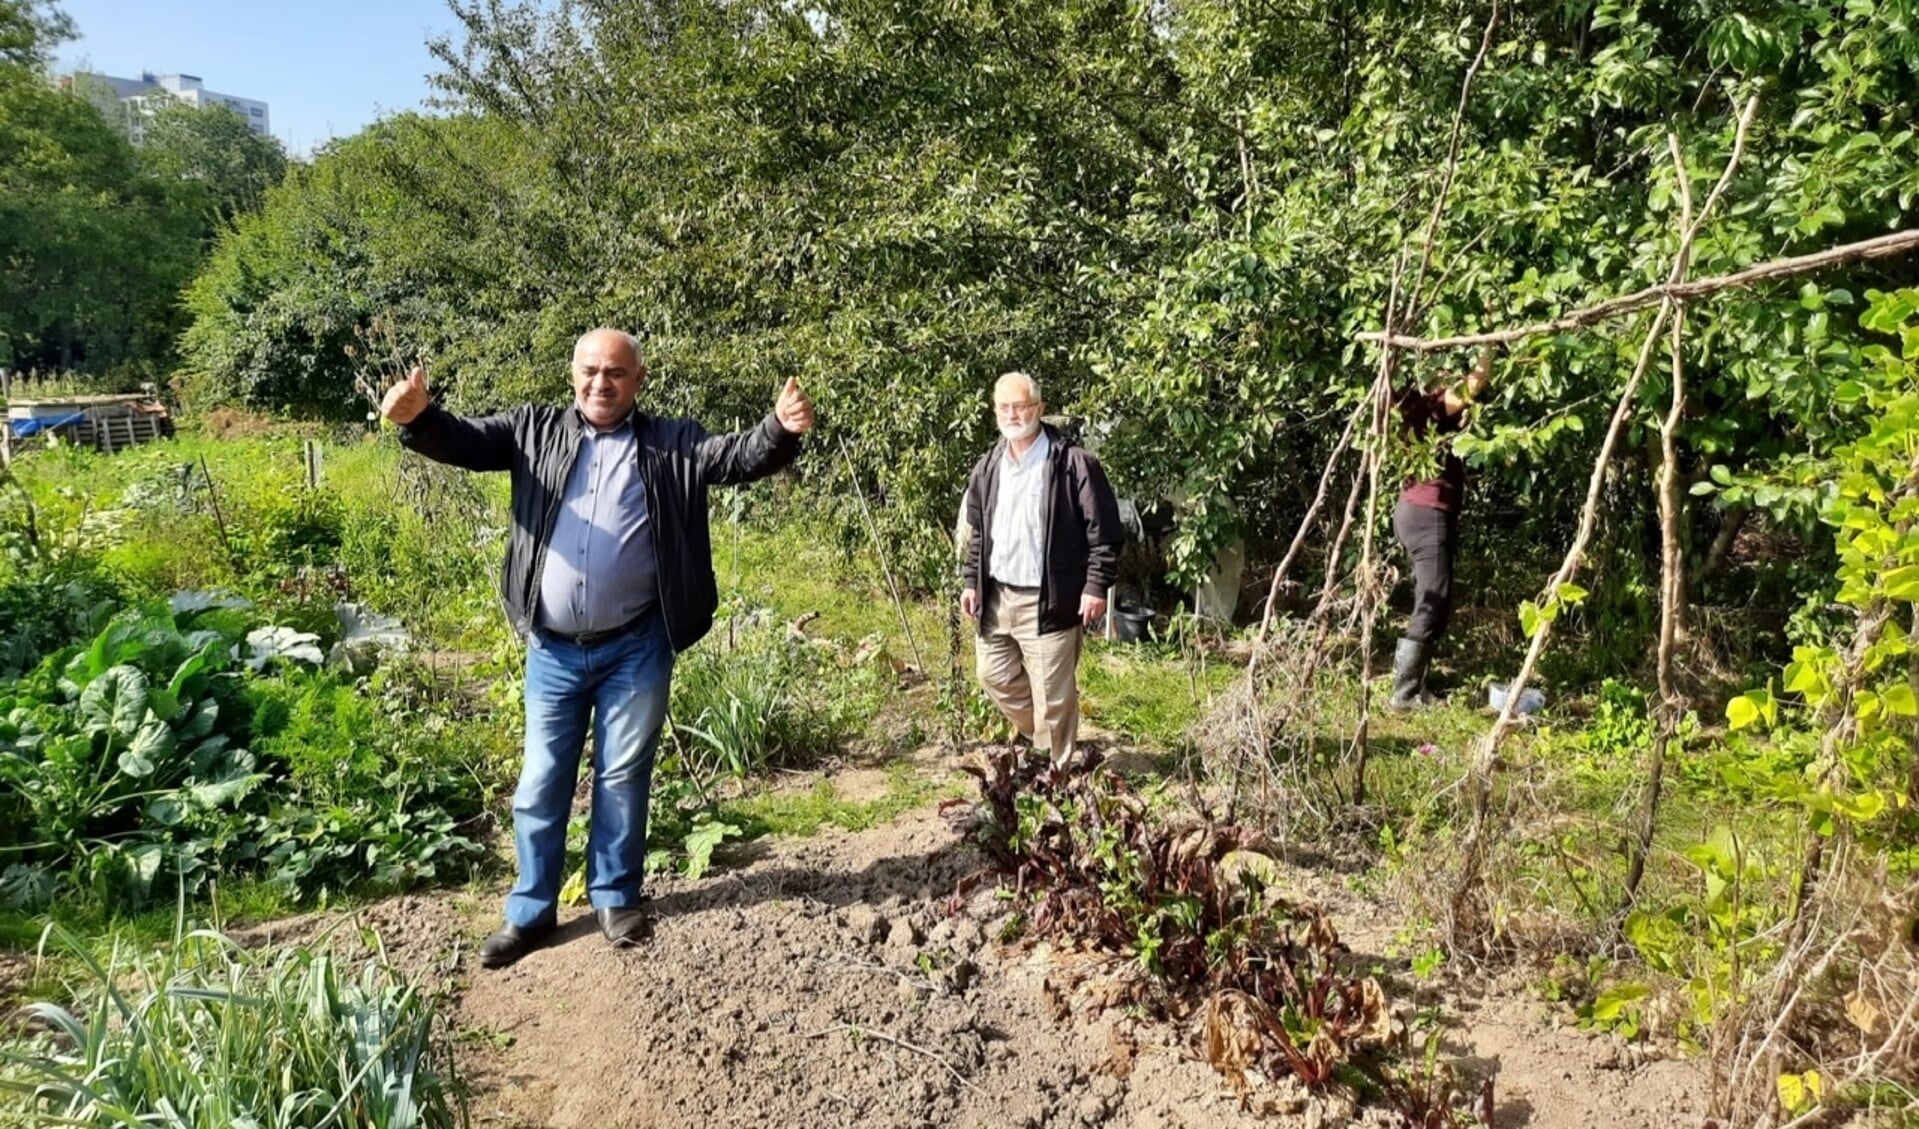 Deelnemers aan project ‘Deel de tuin met oudere migranten’.